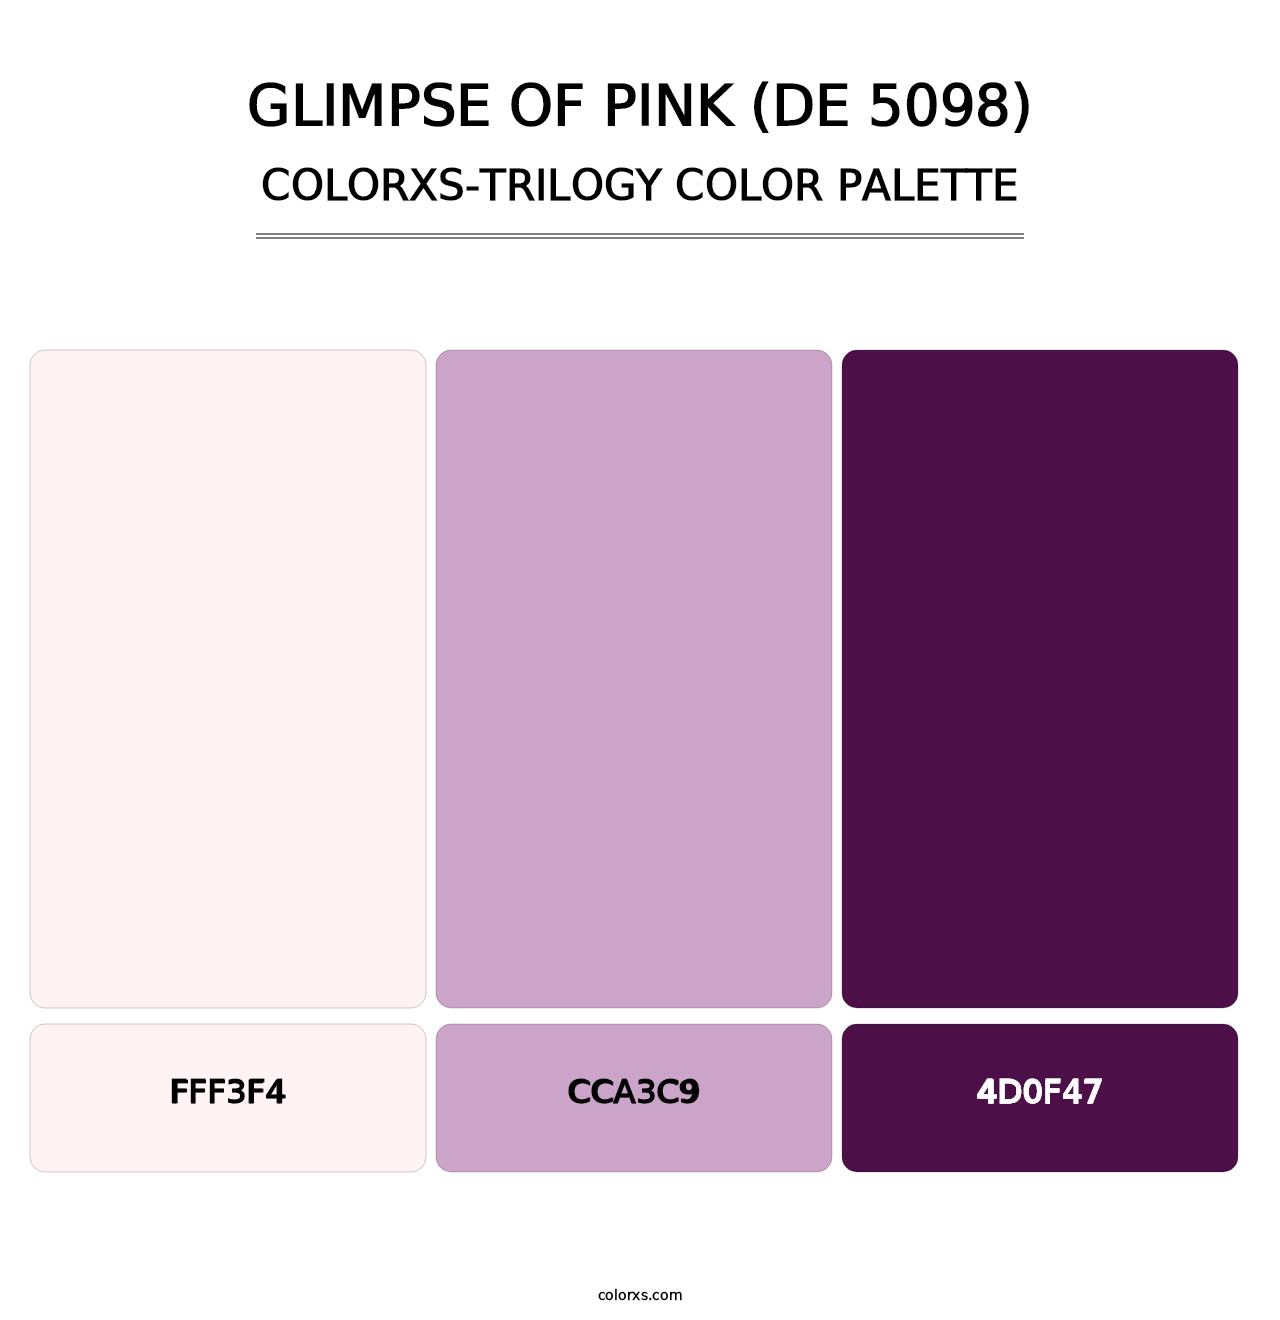 Glimpse of Pink (DE 5098) - Colorxs Trilogy Palette